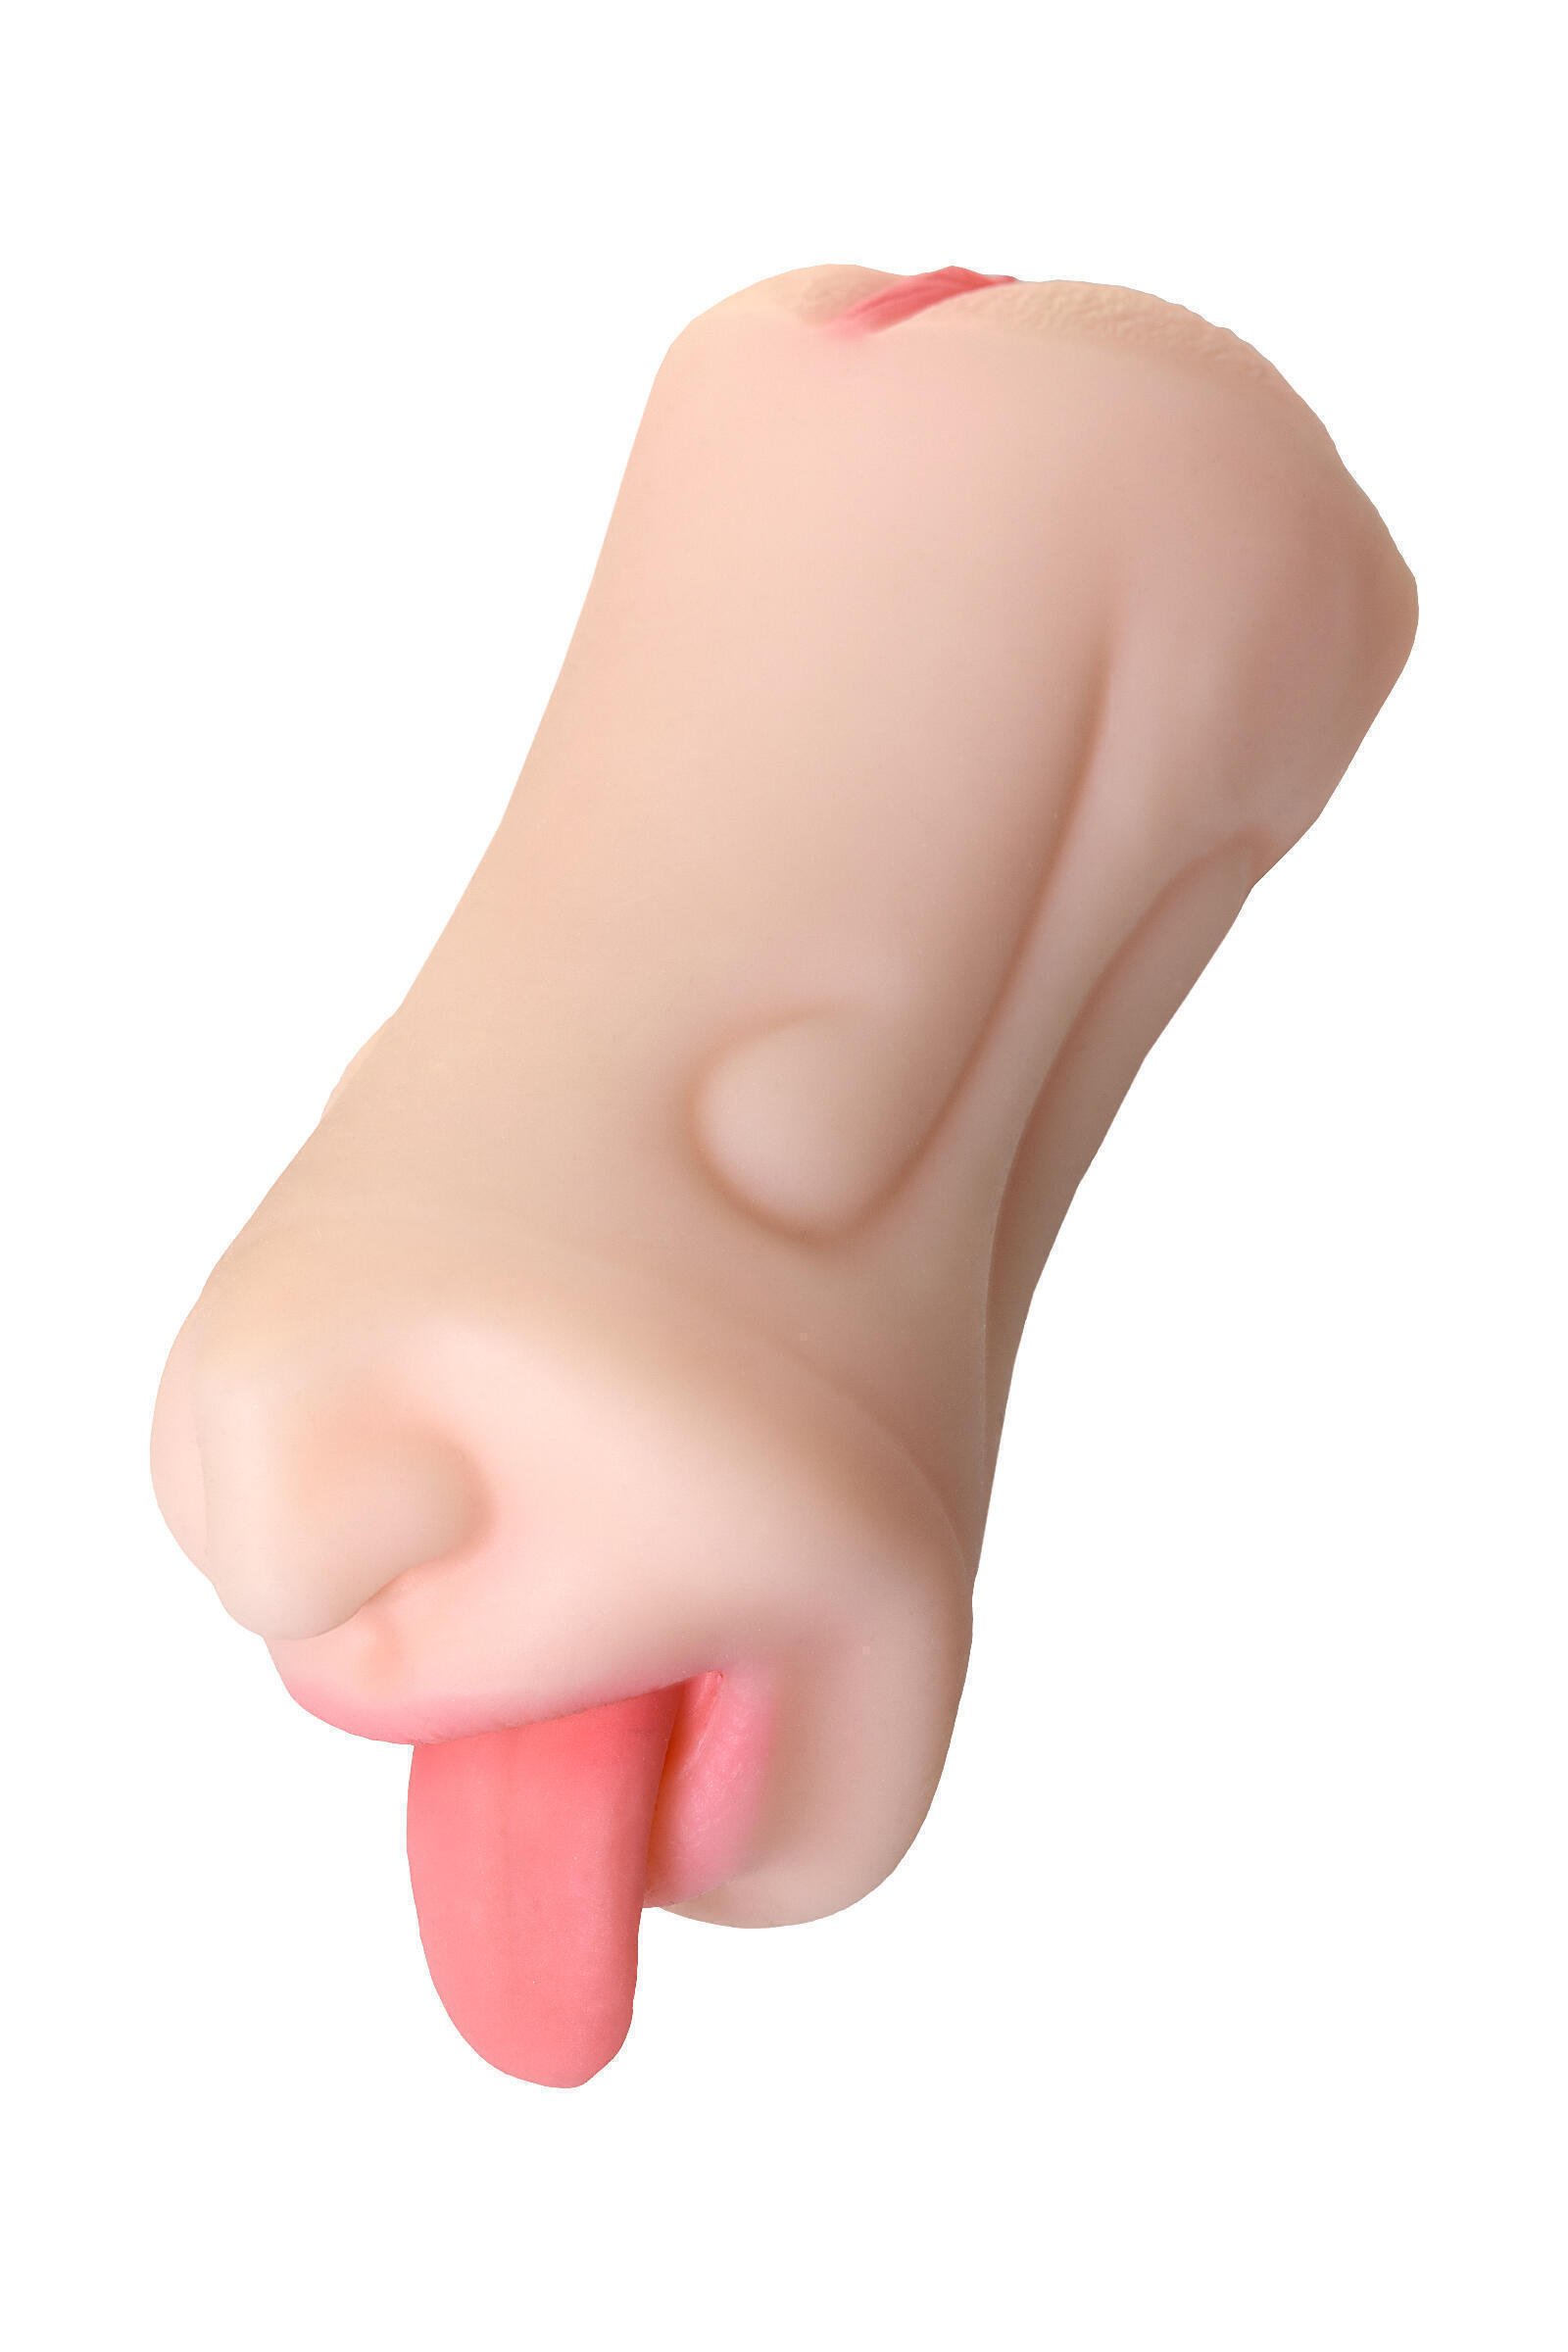 Мастурбатор рот и вагина Toyfa Juicy Pussy Fruity Tongue, телесный